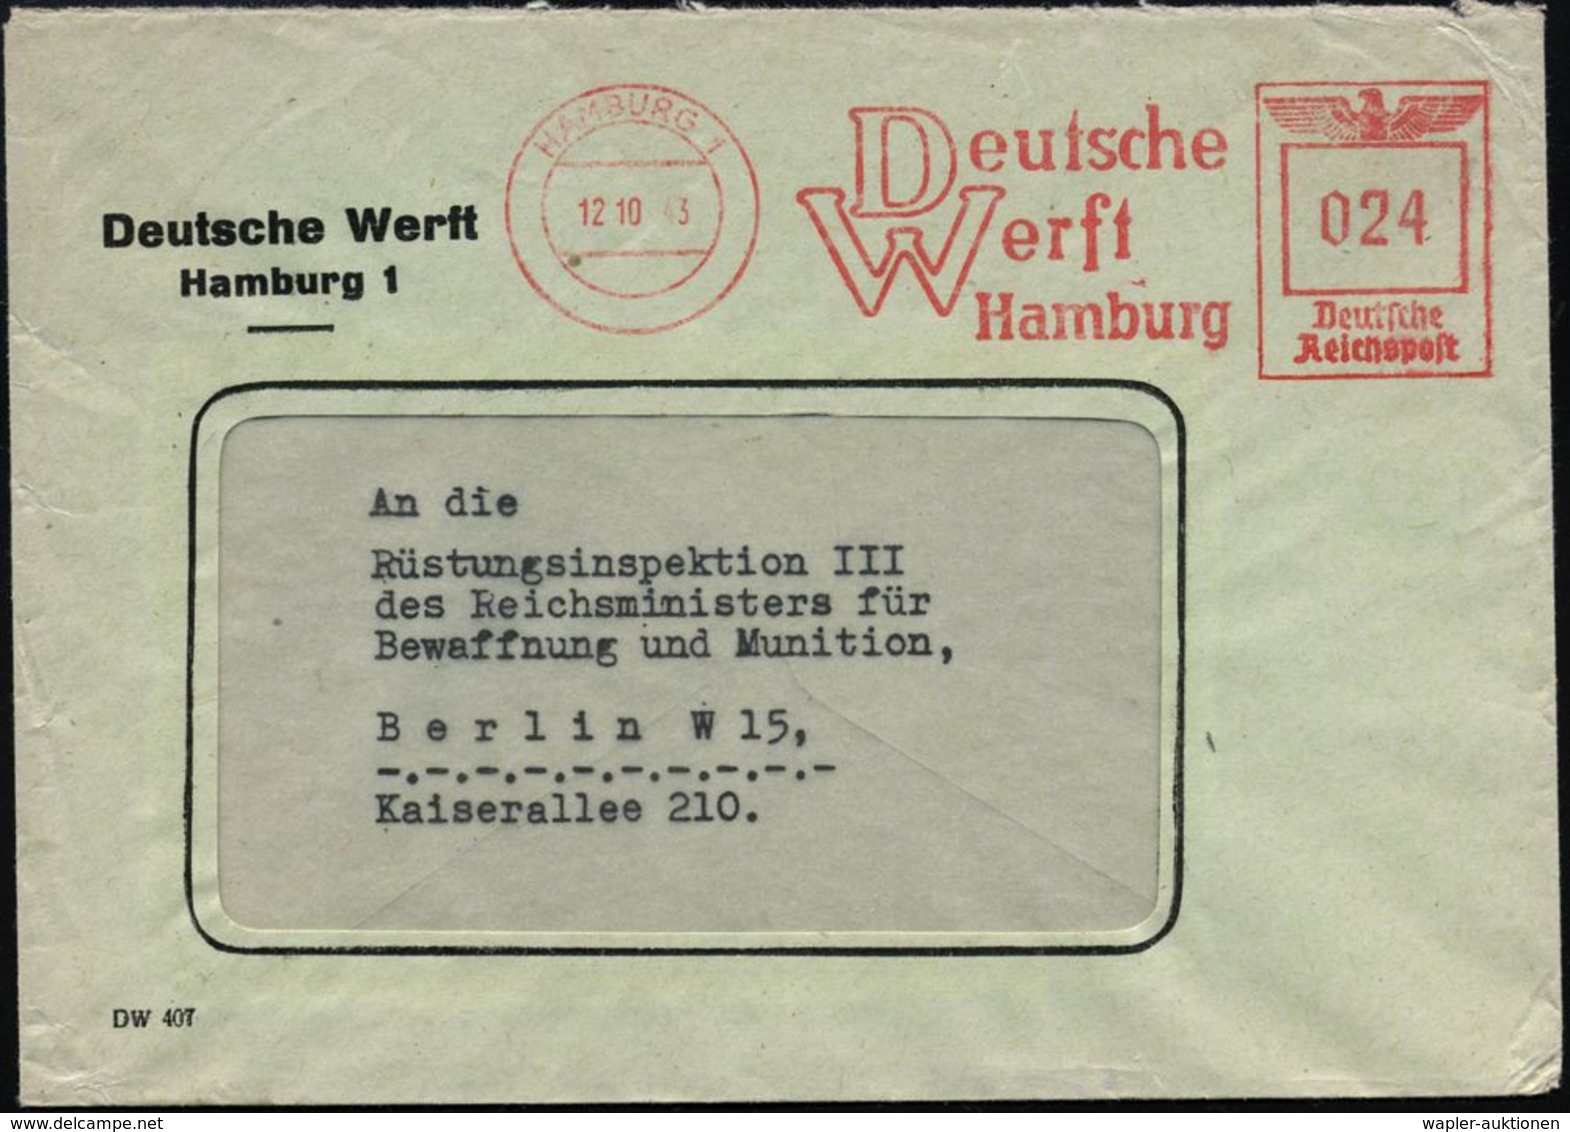 HAMBURG 1/ Deutsche/ Werft 1943 (16.10.) AFS Auf Firmen-Bf. = Kriegsschiffbau, Vor Allem U-Boote (Typen IX C, IX C/40, X - Schiffahrt